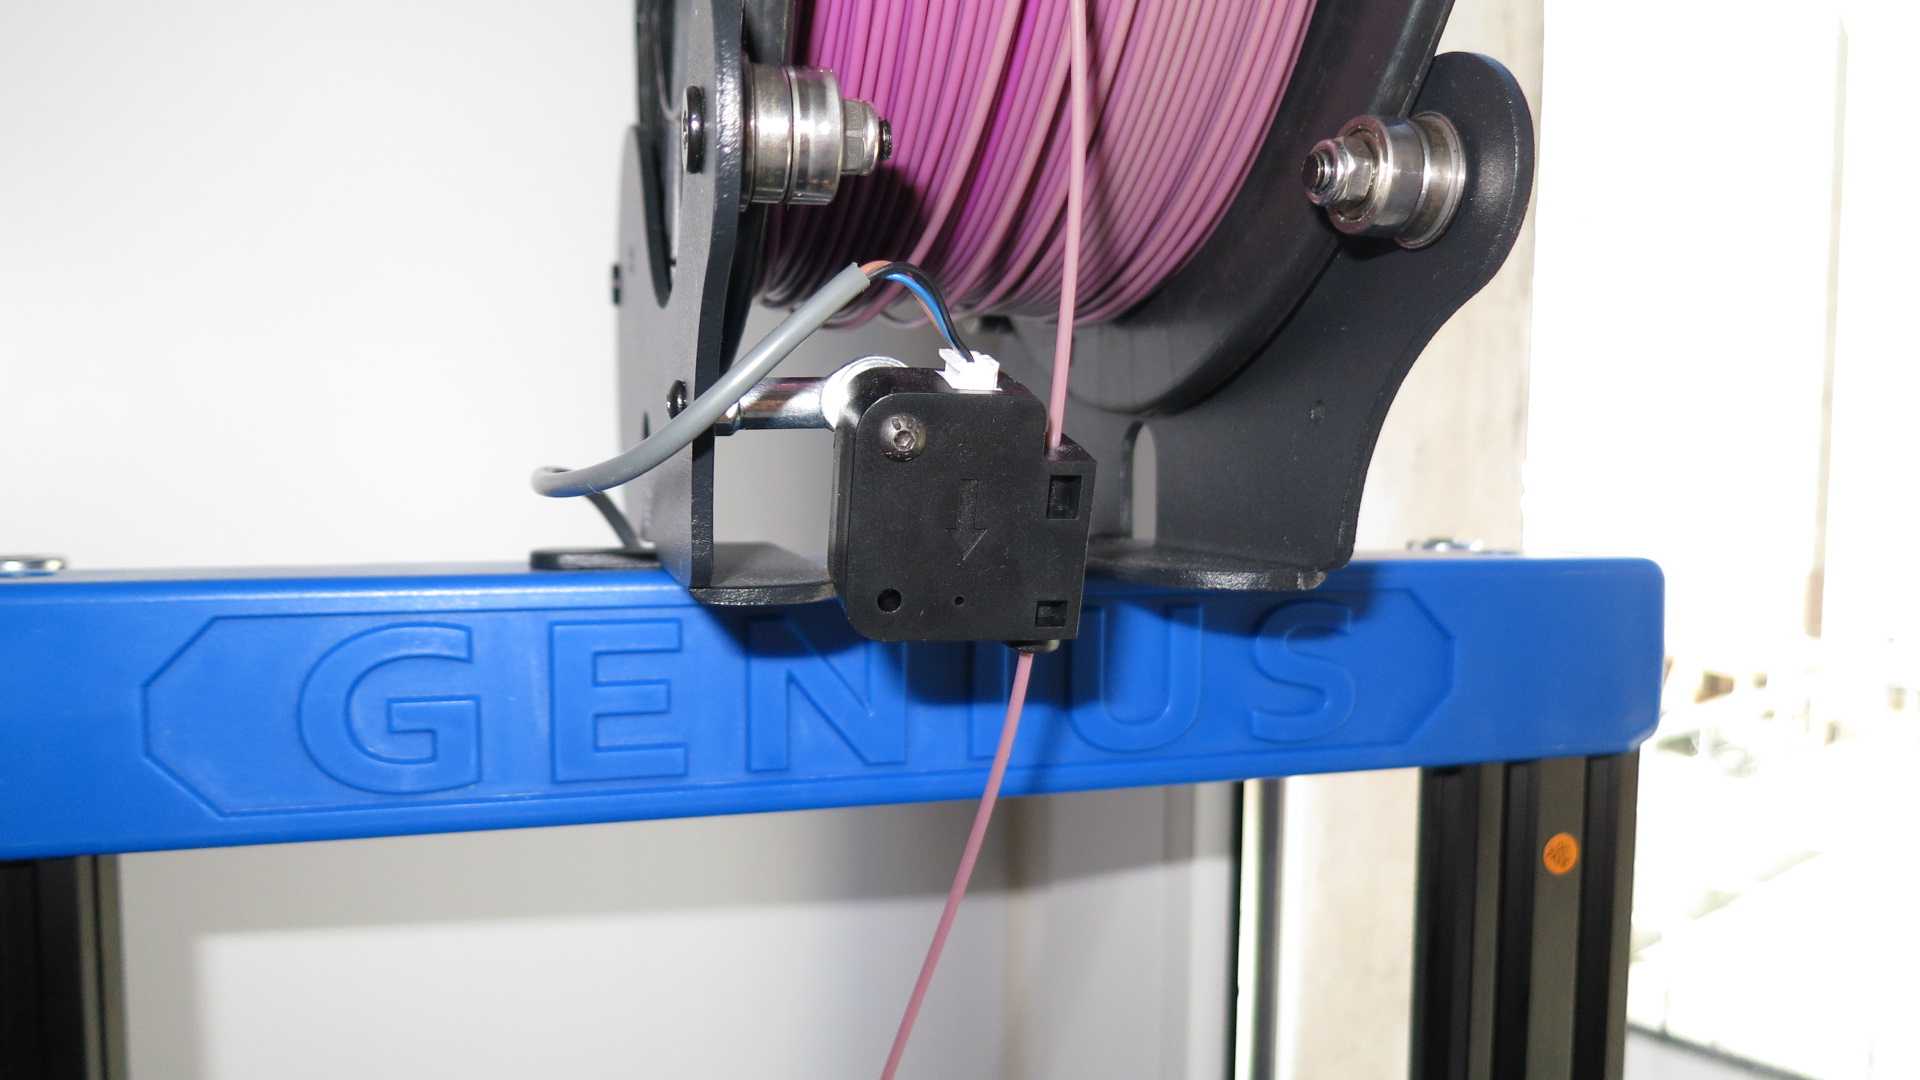 Выбираем оптимальный экструдер на замену стандартному в 3D принтере Anet A8 Топ 5 экструдеров для Anet A8 с их преимуществами и недостатками